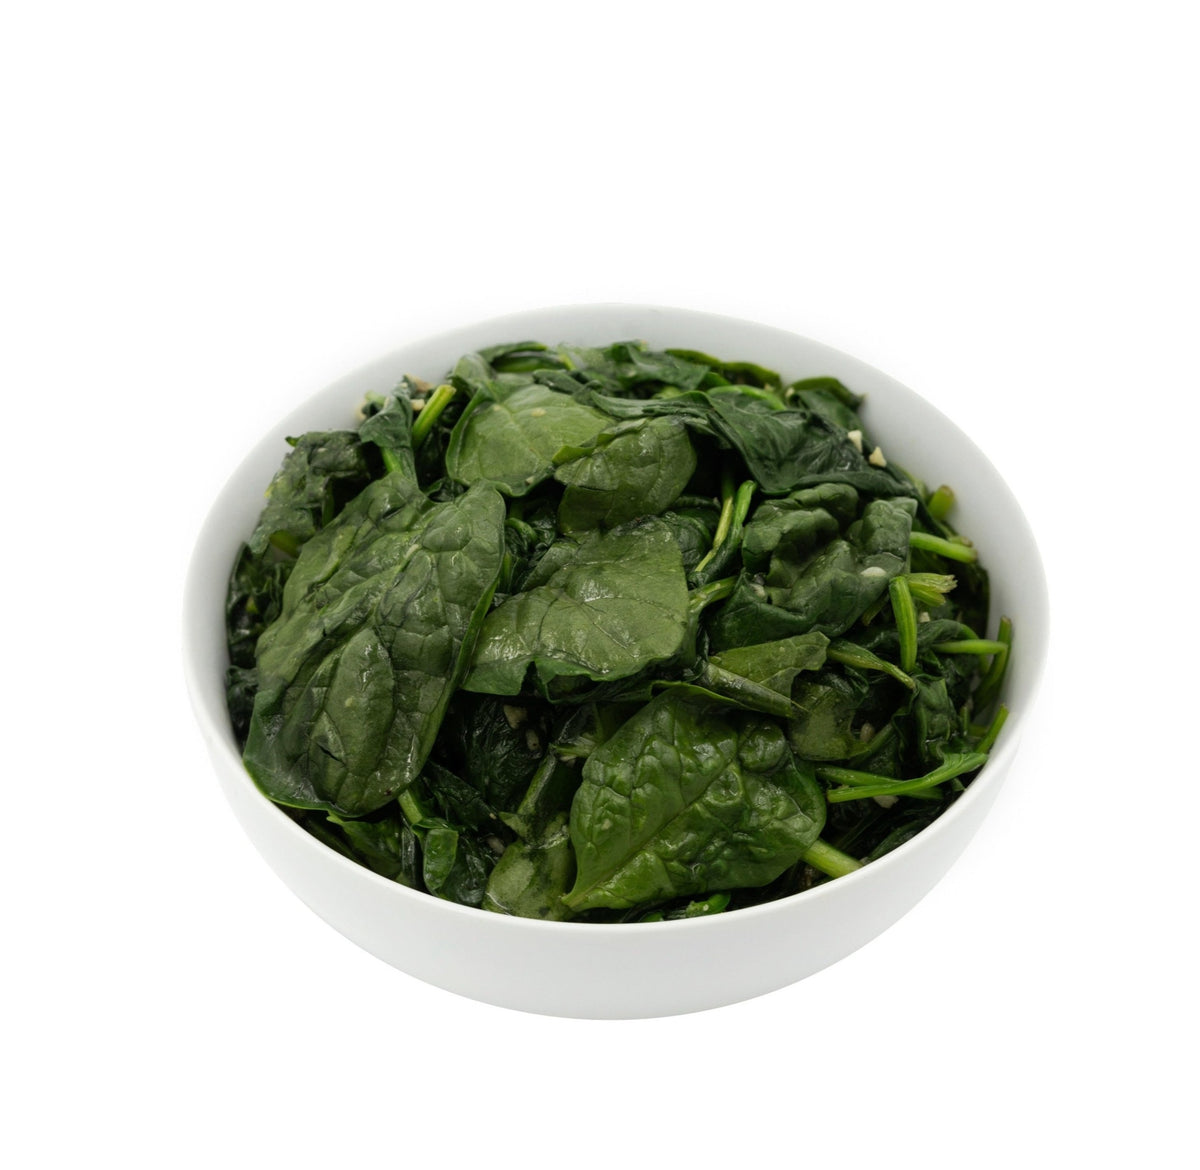 Sautéed Spinach